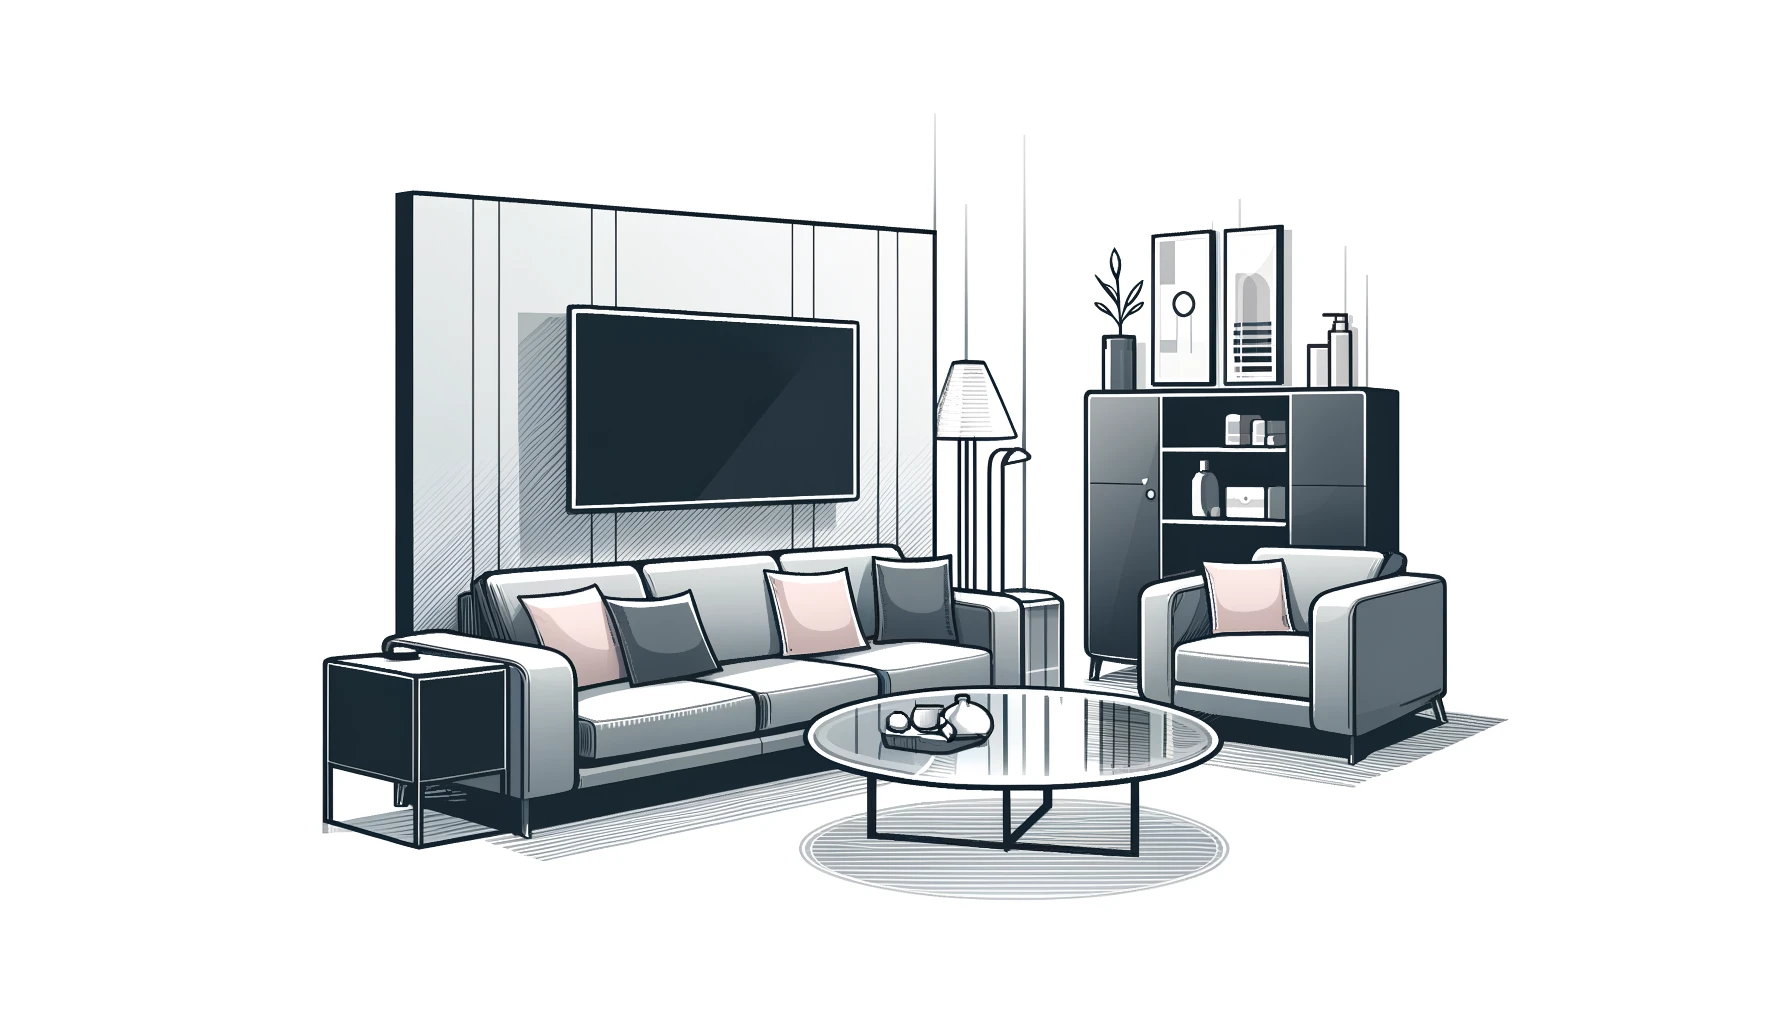 Kaip išsirinkti kokybiškus baldus savo namams: ekspertų patarimai